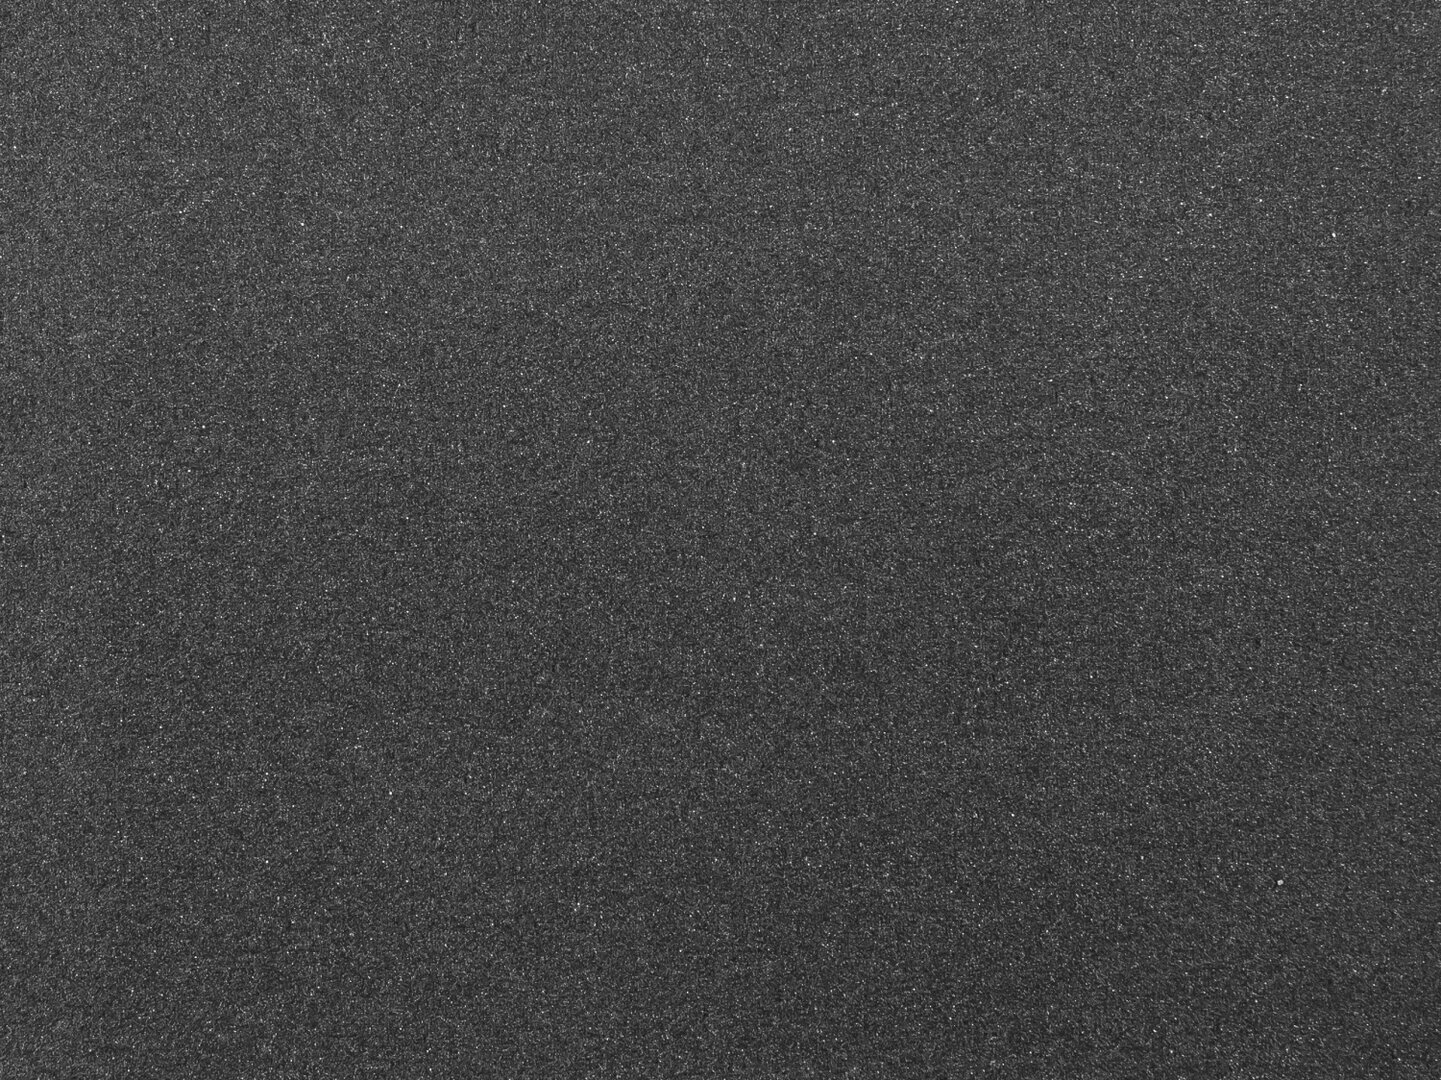 Шлифовальная шкурка Зубр 35415-240 230х280 мм, Р240, 5шт., на тканевой основе, водостойкие